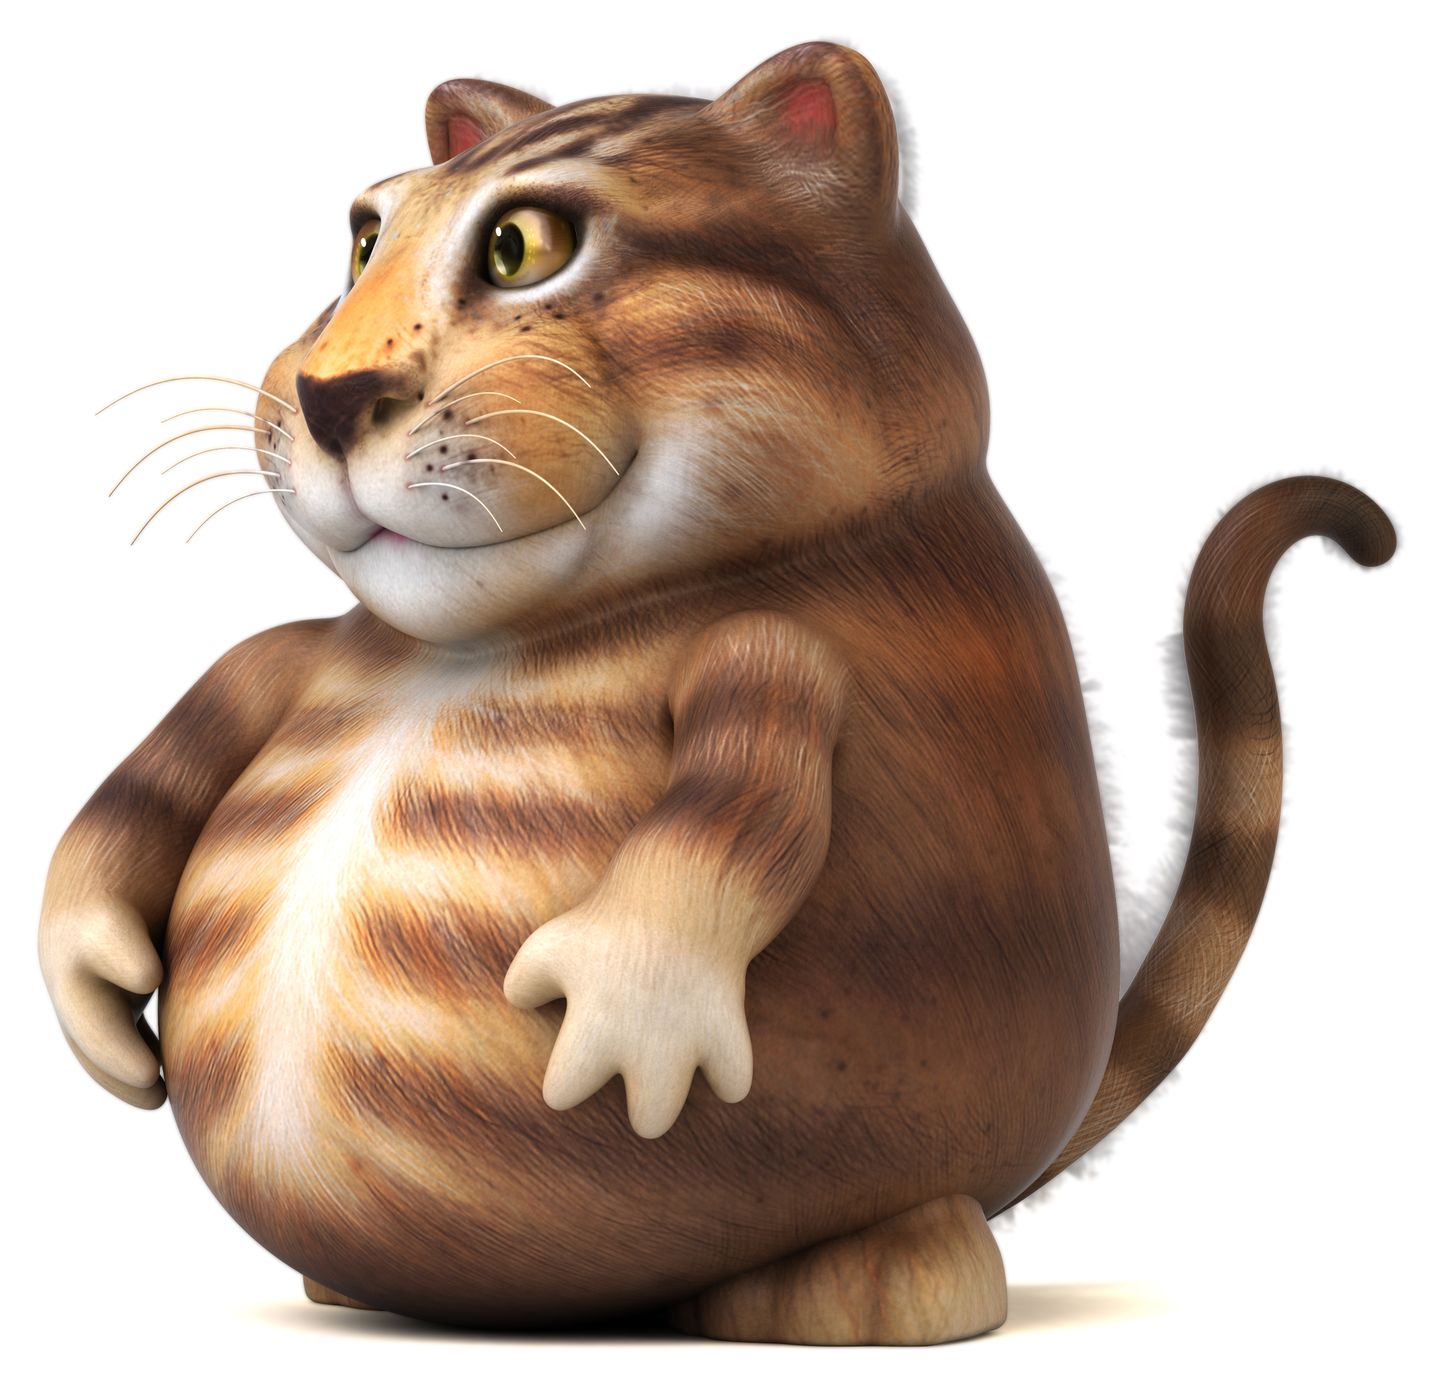 Толстый кот. Иллюстративная картинка